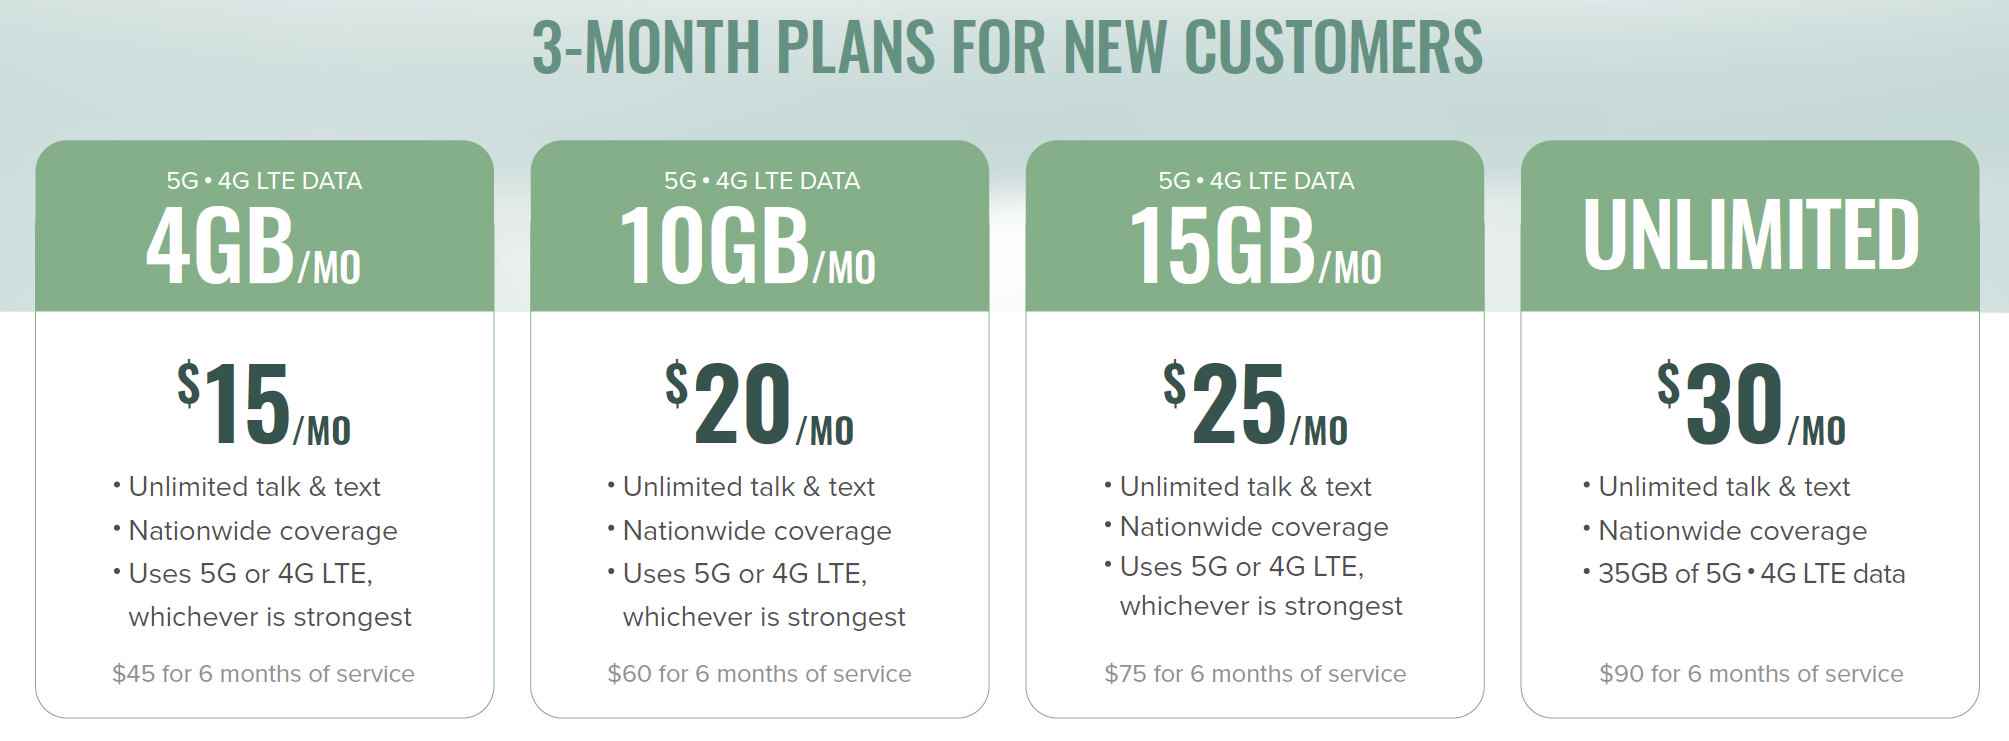 Das günstigste Angebot für unbegrenzte 5G-Datenpläne in den USA geht an Mint – Mint Mobile schnappt sich das beste Preisangebot für unbegrenzte 5G-Datenpläne in dieser Weihnachtszeit